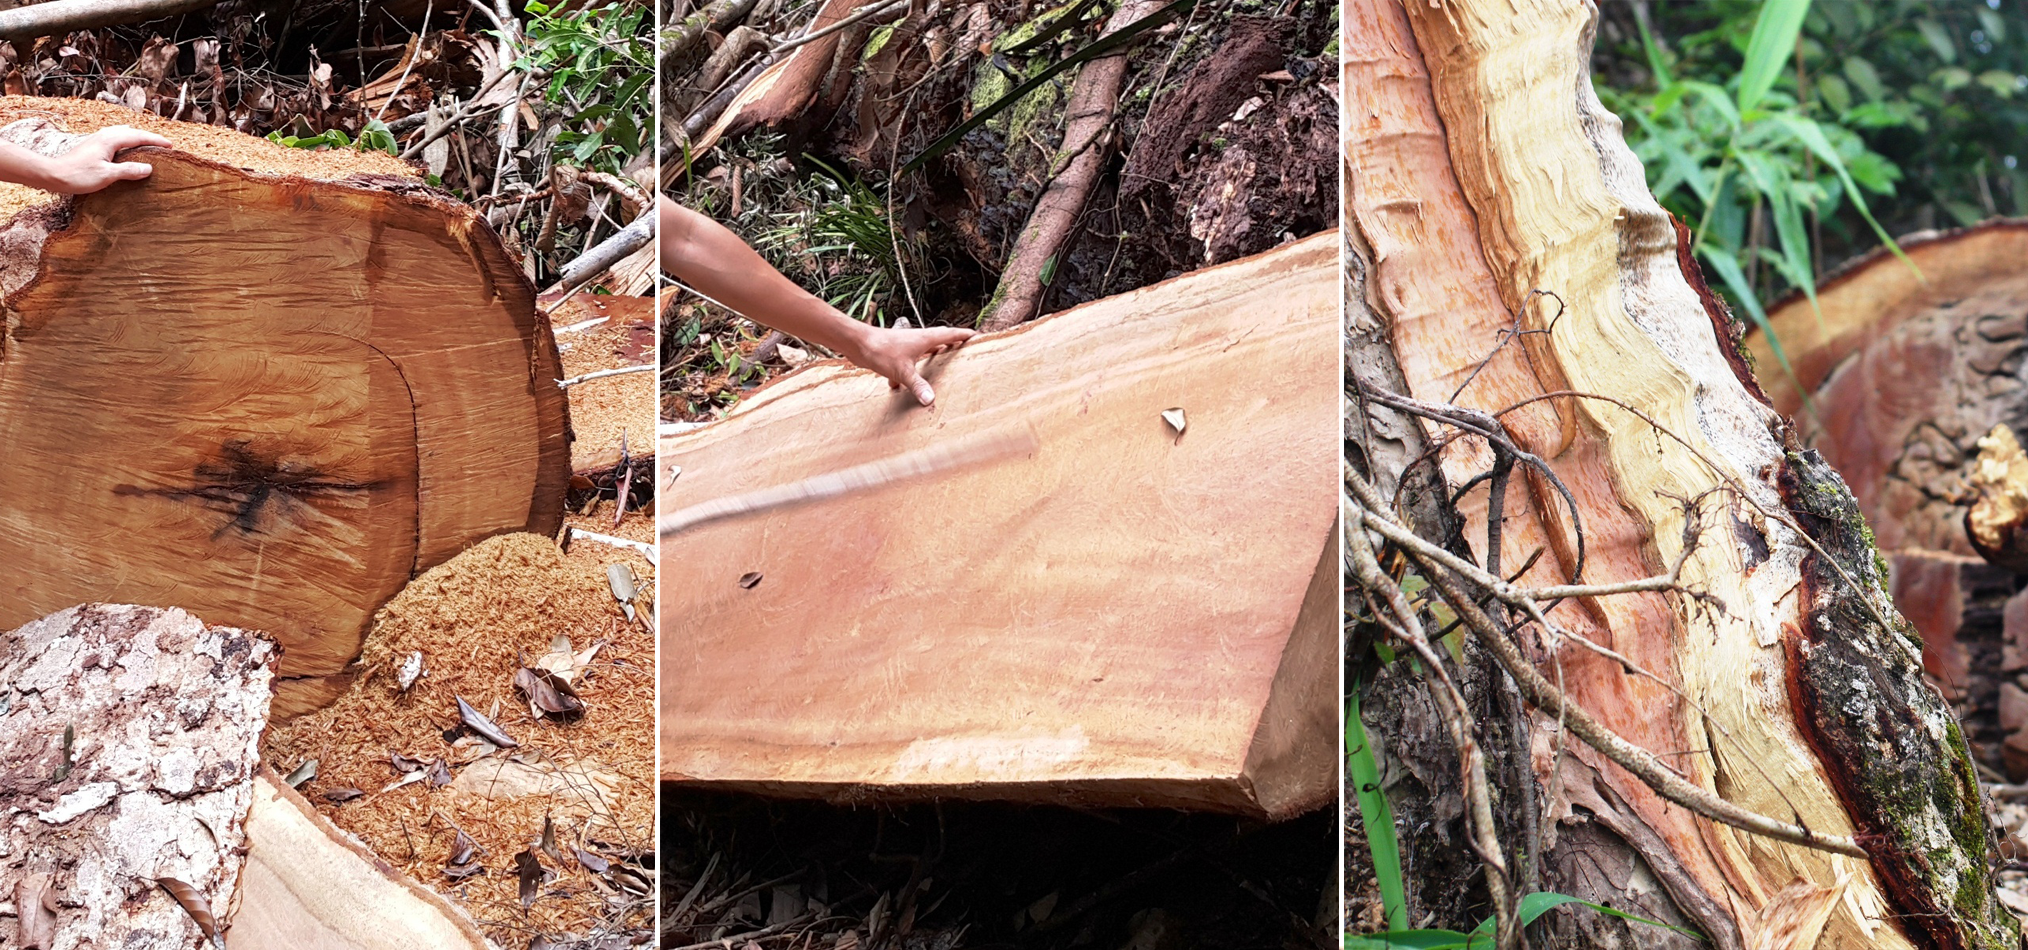 Tình trạng khai thác gỗ trái phép vẫn diễn biến hết sức phức tạp tại nhiều địa phương trên cả nước. (Ảnh: Vietnam+)